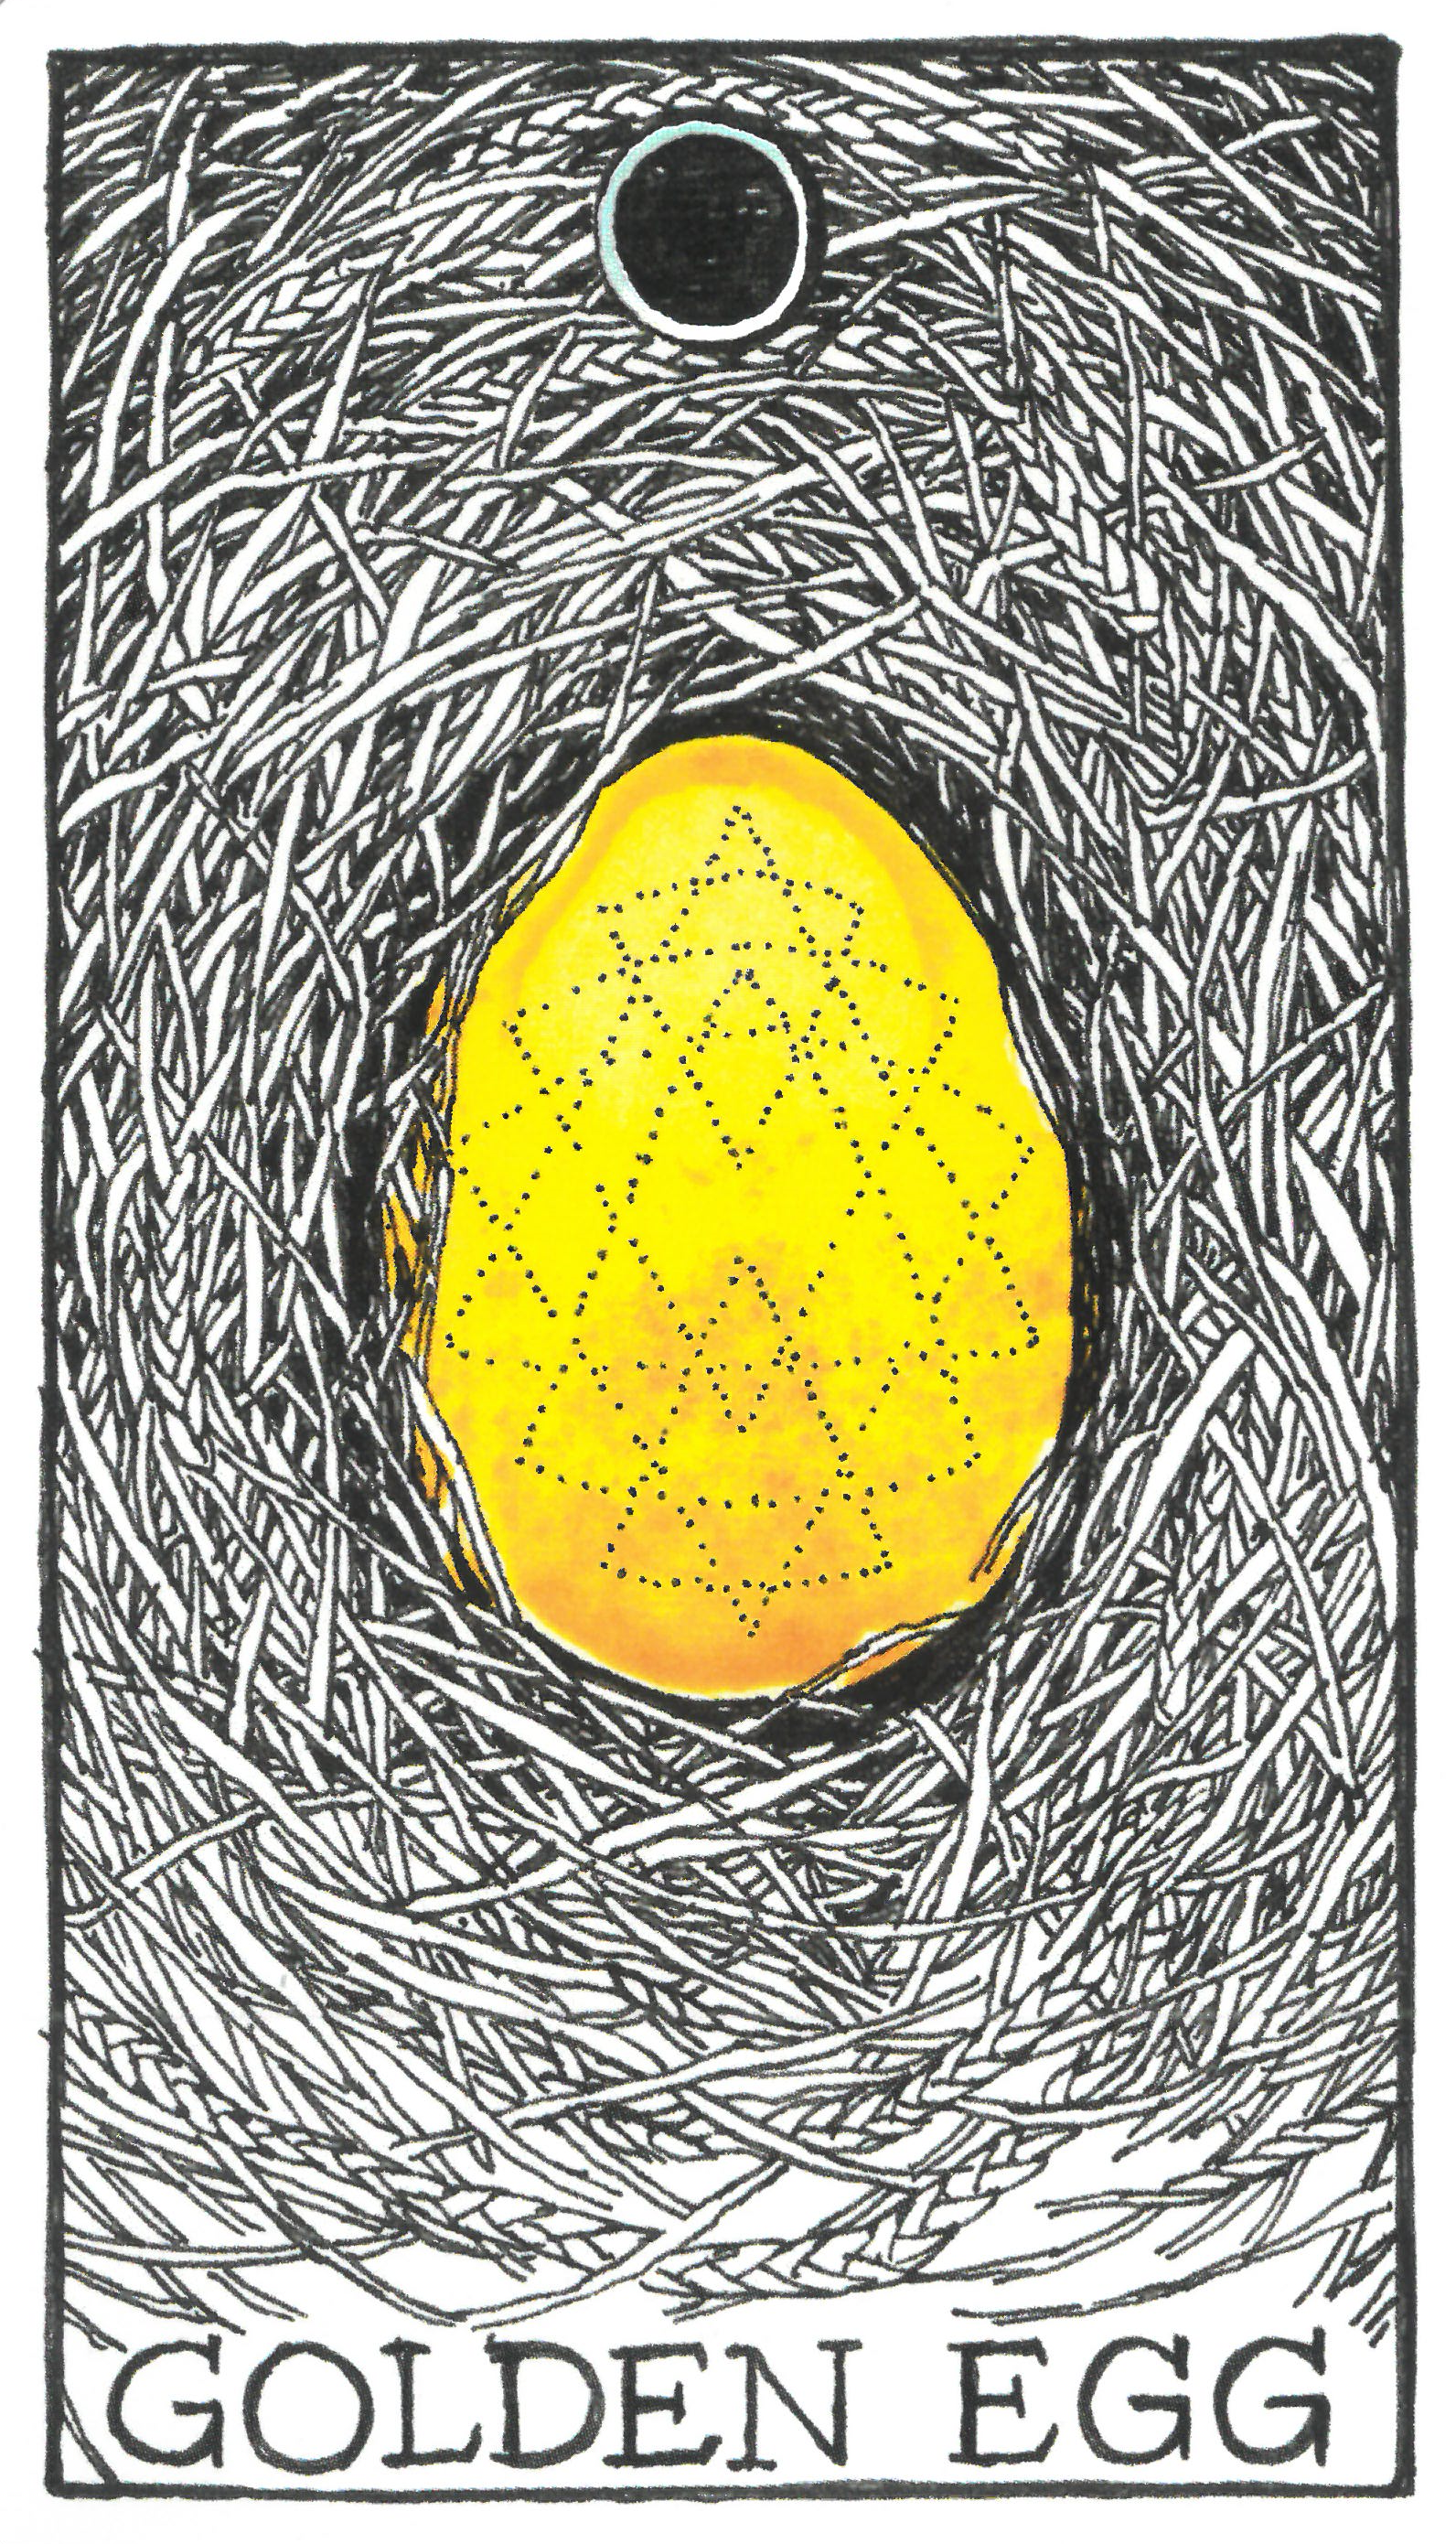 The Wild Unknown Animal Spirit Golden Egg 황금알(골든에그)